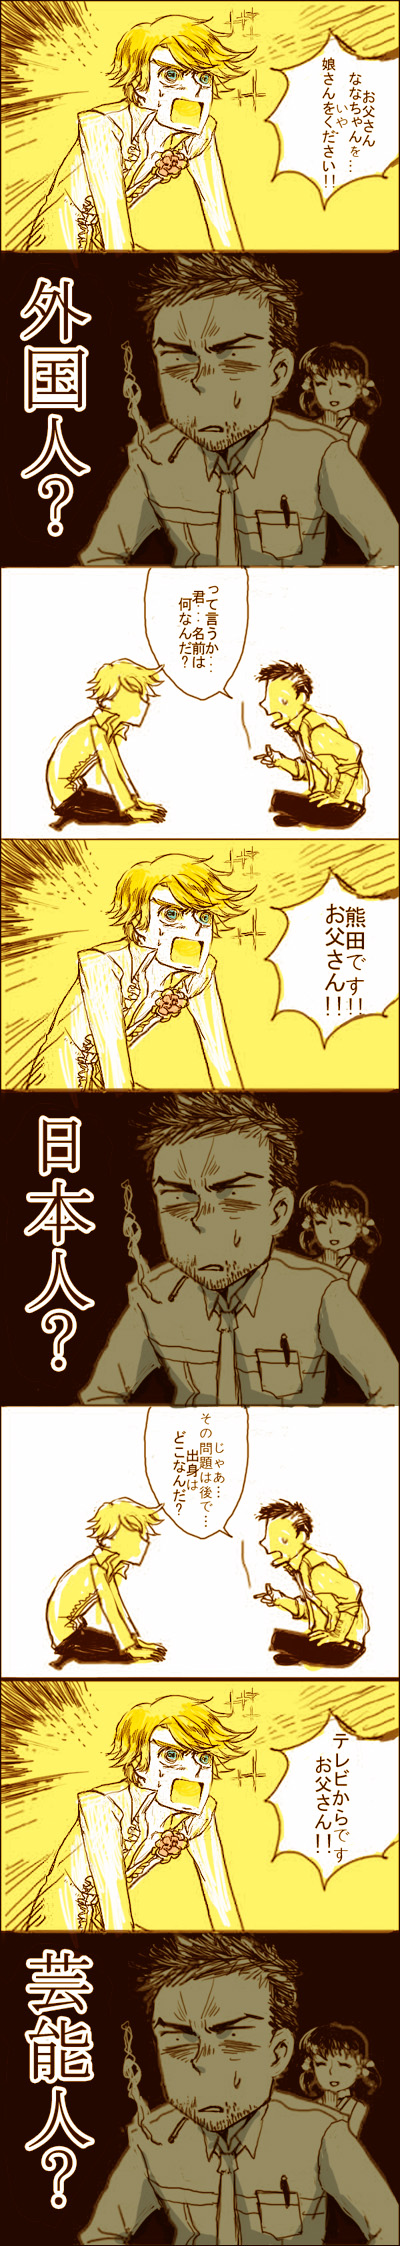 bad_id cigarette comic doujima_nanako doujima_ryoutarou father_and_daughter highres kuma_(persona_4) persona persona_4 smile translated translation_request